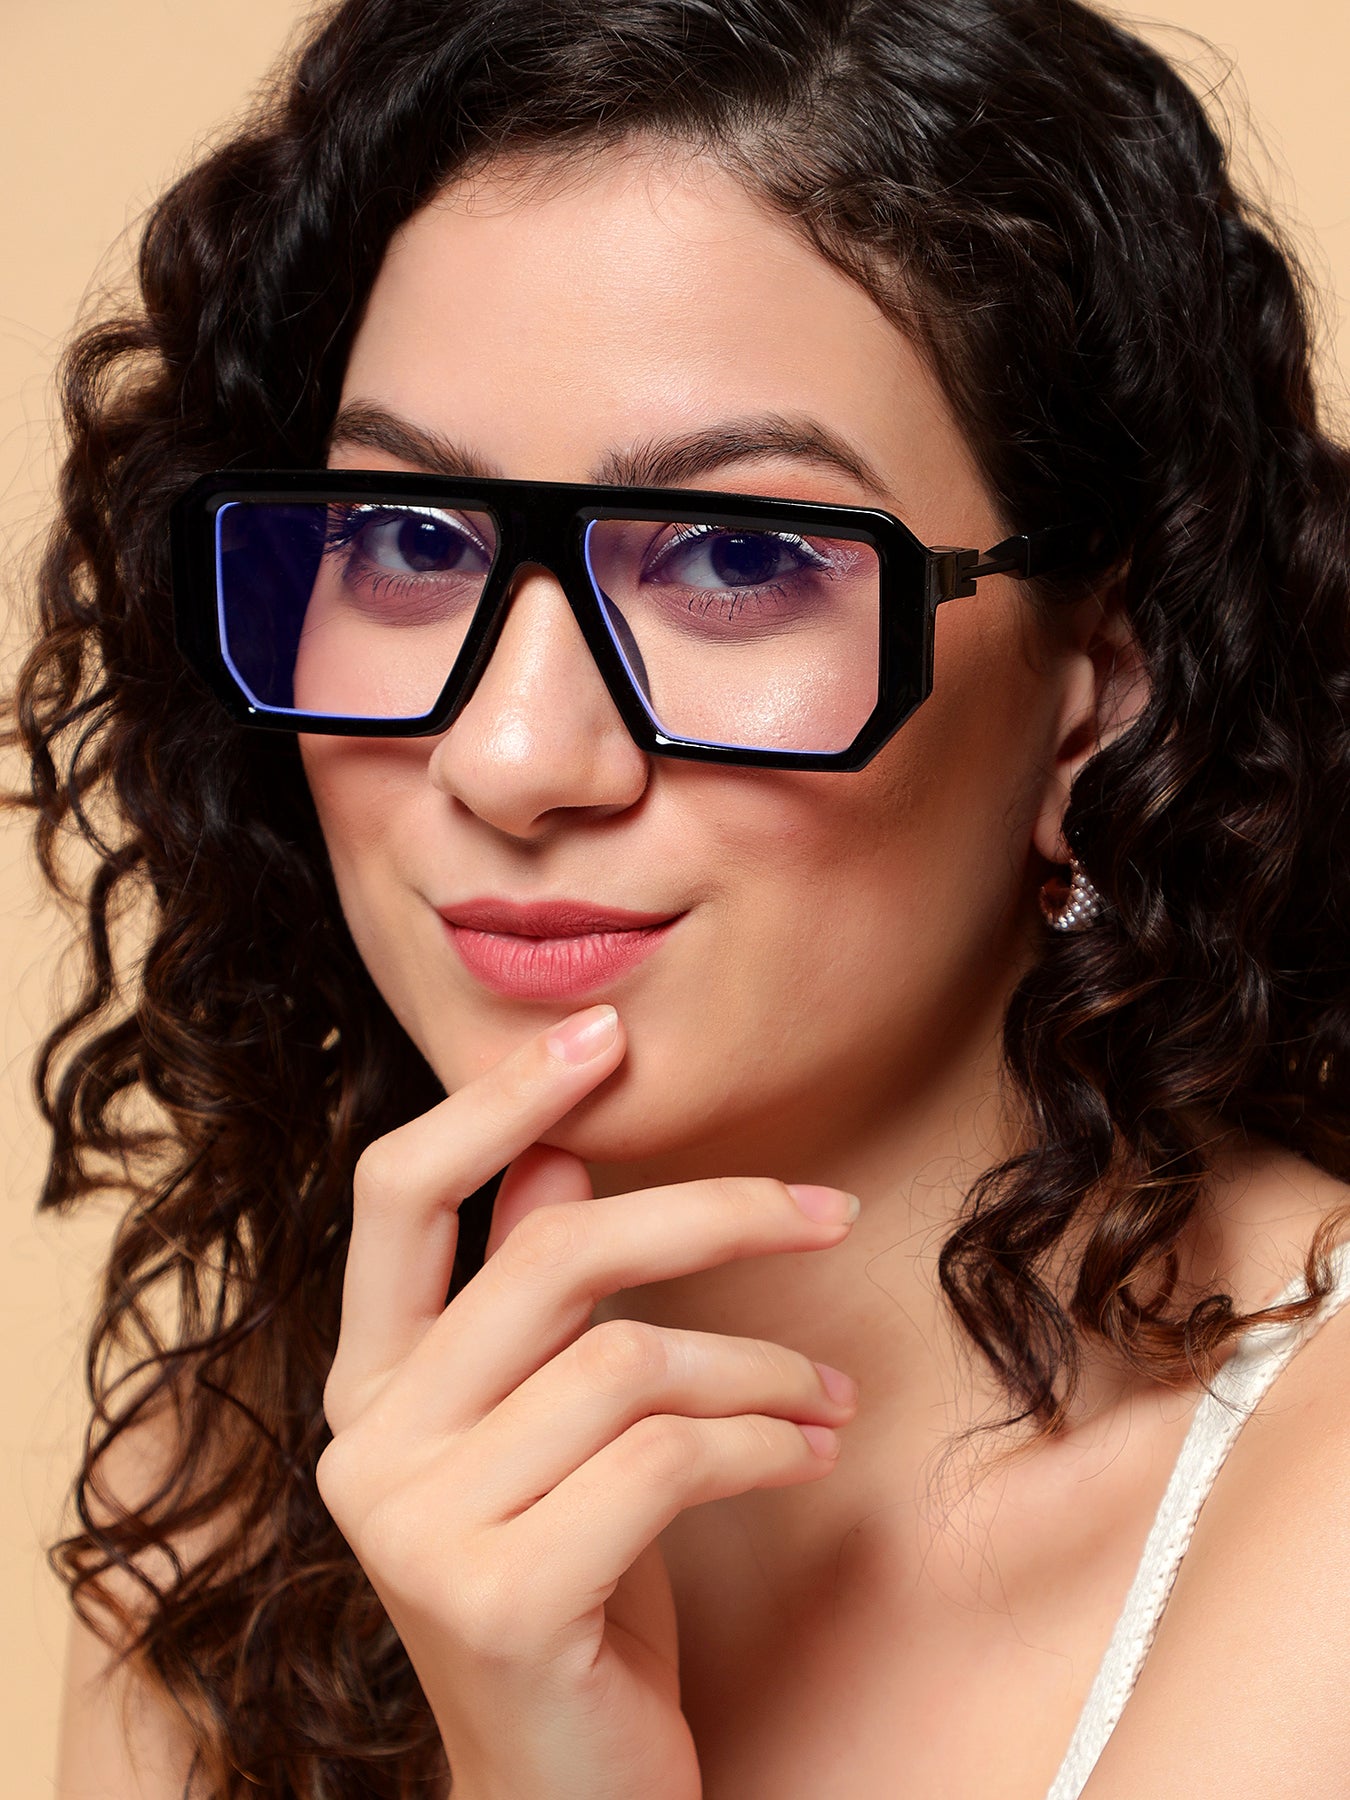 Buy Voyage Black Wayfarer Eyeglasses for Men & Women (8774MG3922) at